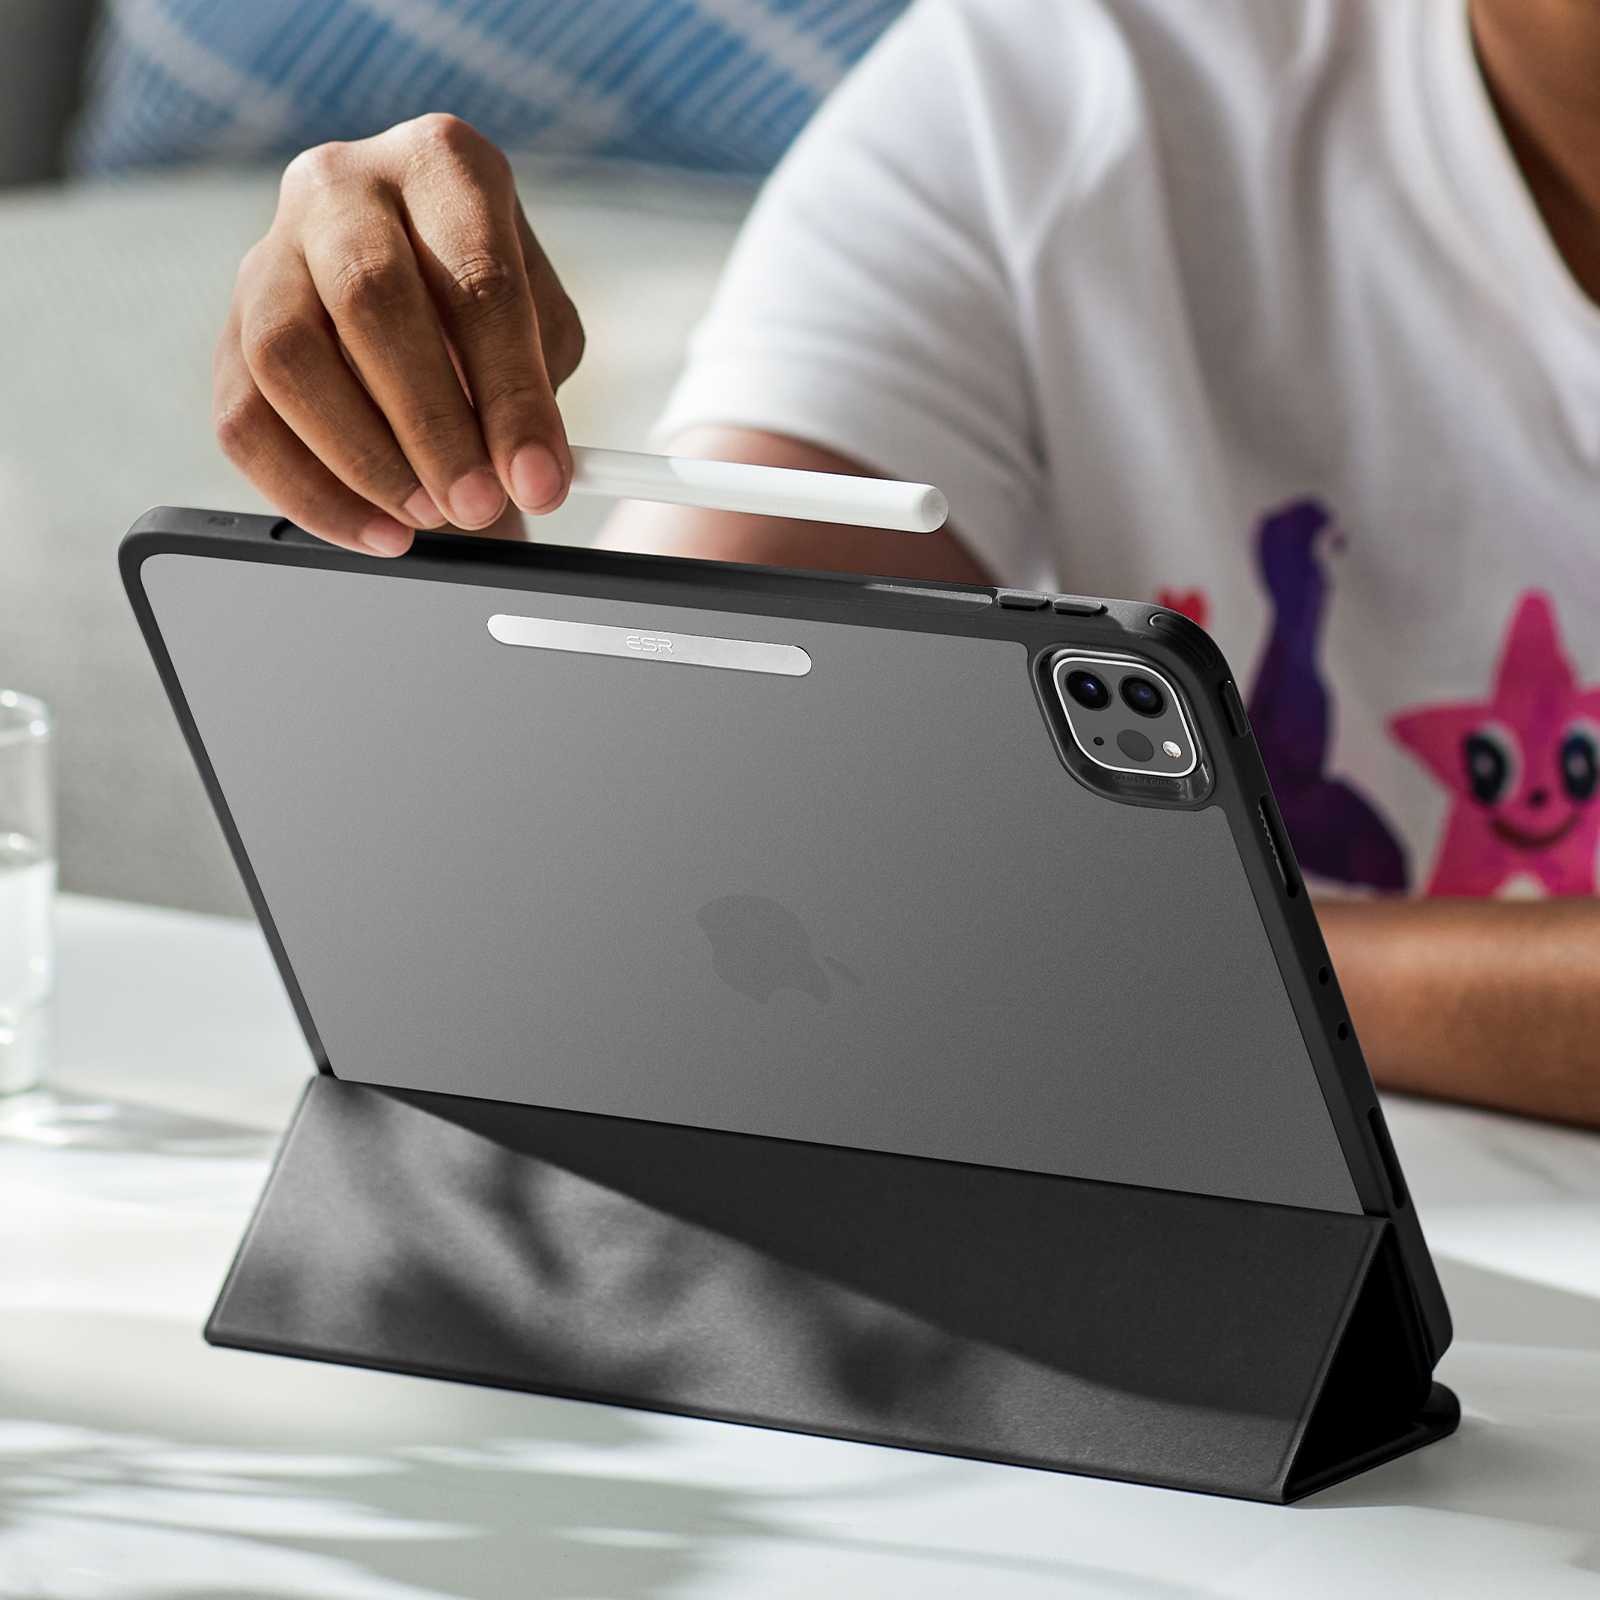 Coque Mince et Souple série Project Zero pour iPad Pro 11 de 2021